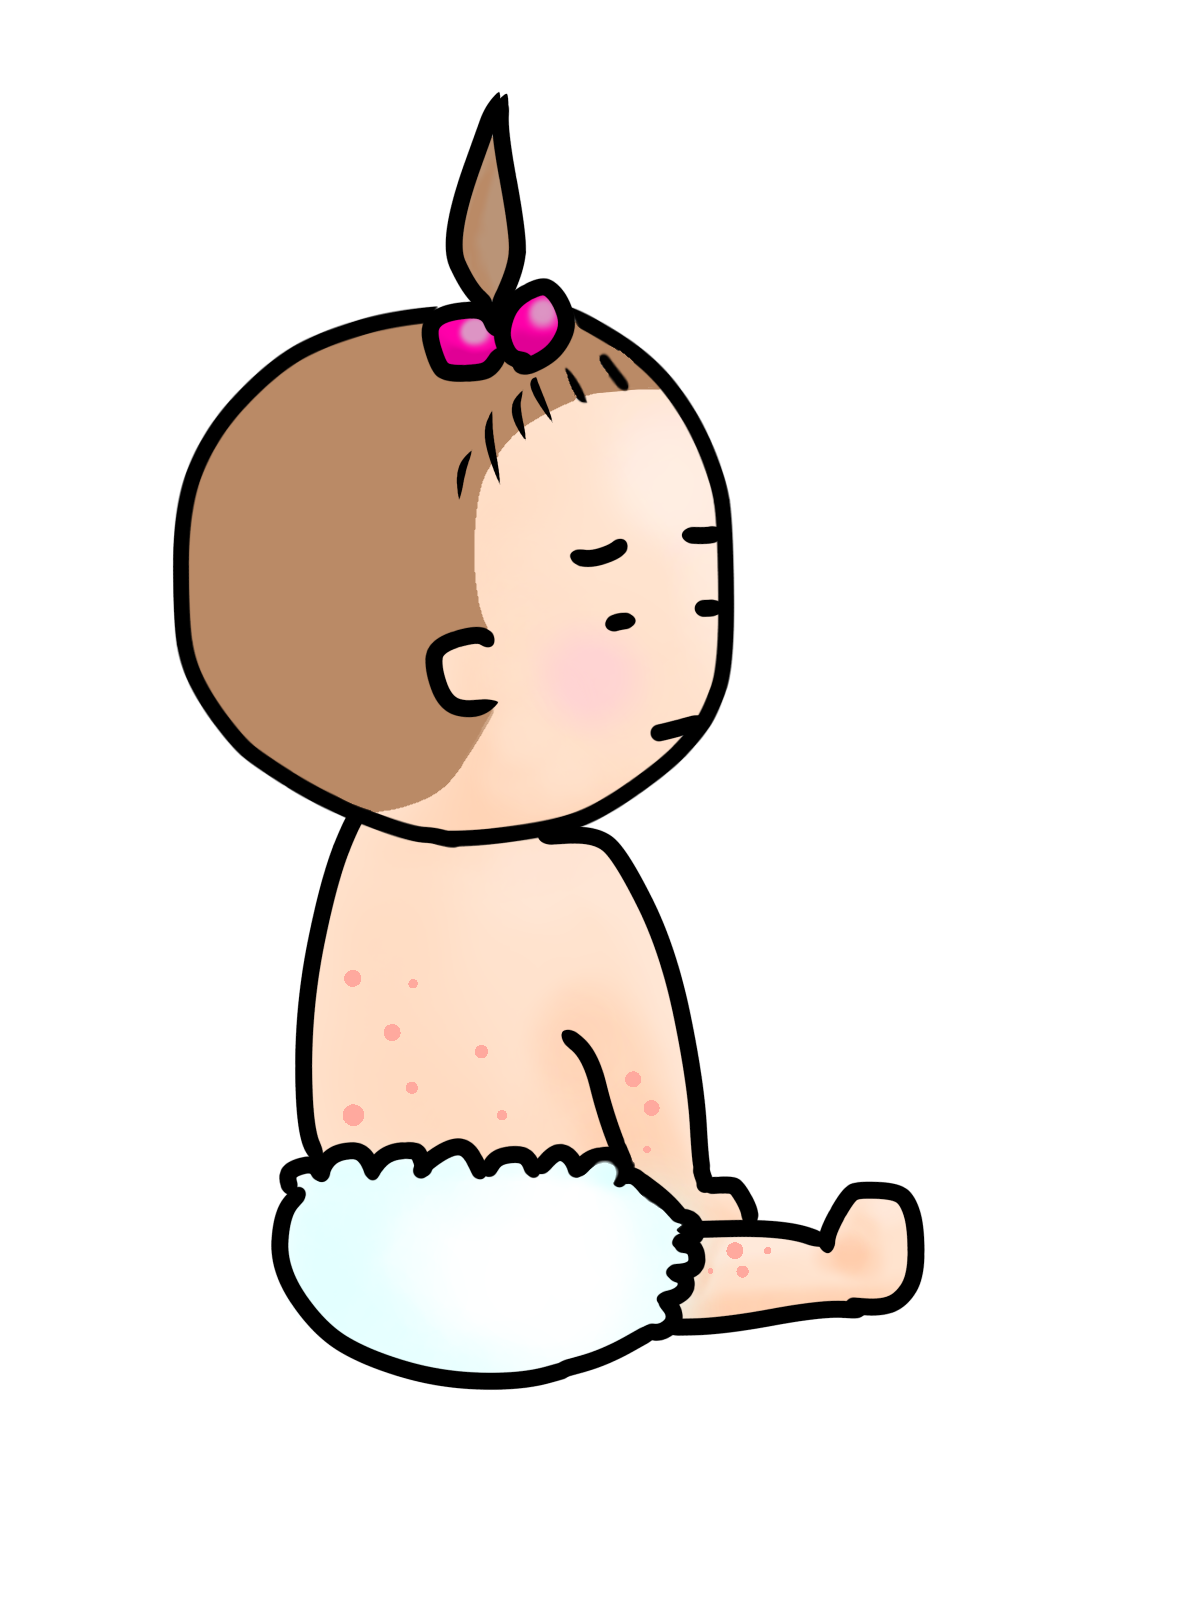 乳児期早期に発症したアトピー性皮膚炎は、季節性アレルギーのリスクになる